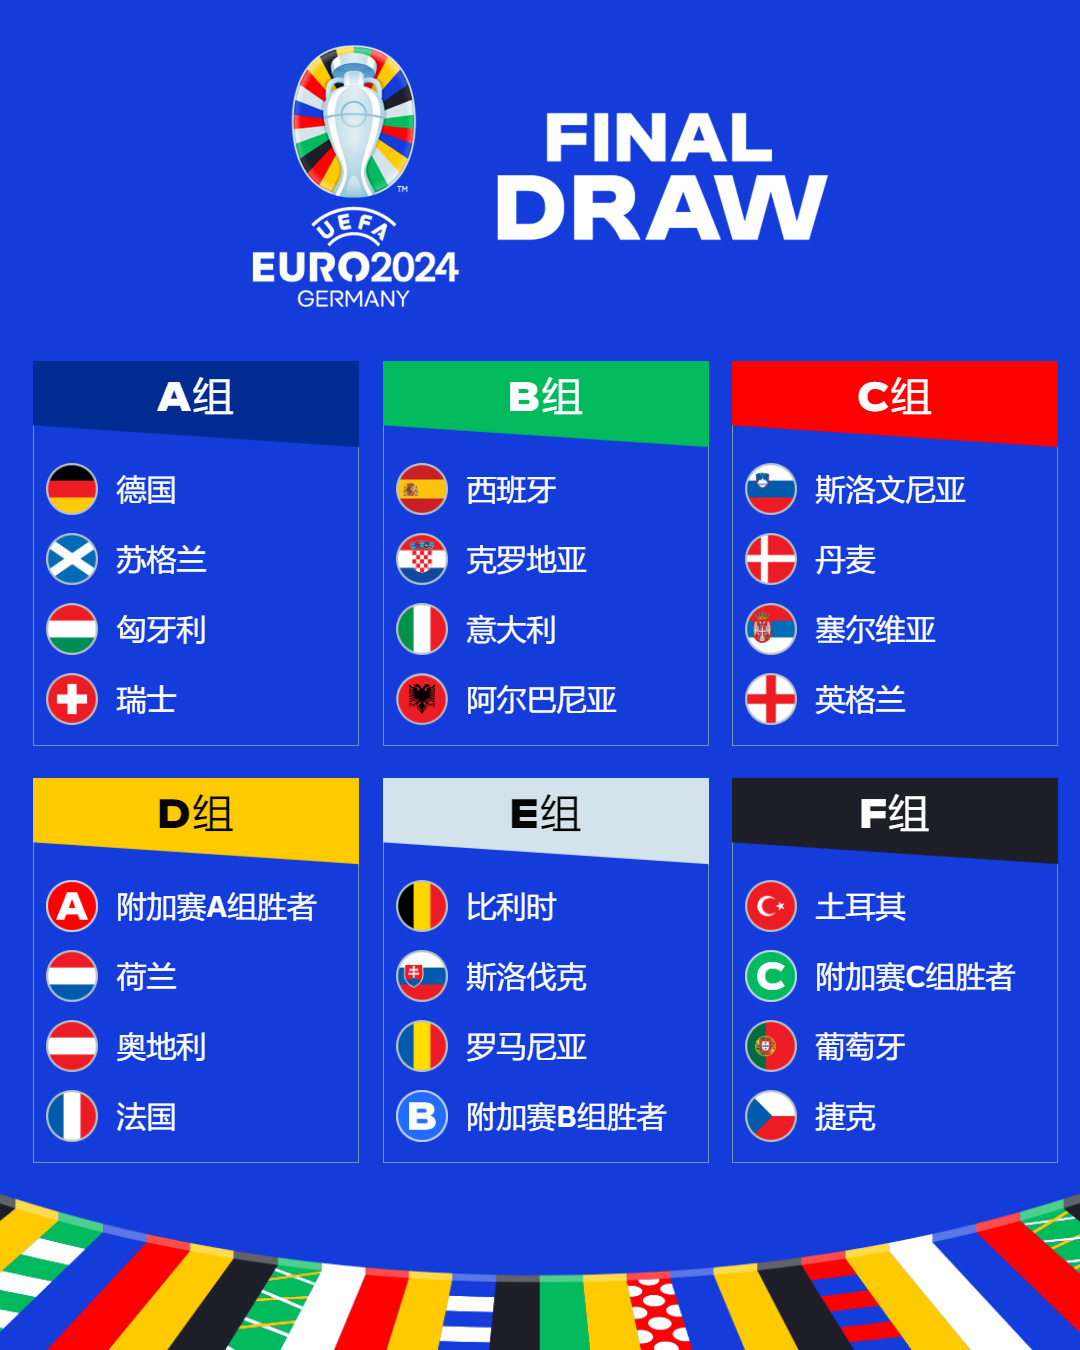 欧洲杯出线 的翻译是：Europe outlet 中文翻译英文意思，翻译英语